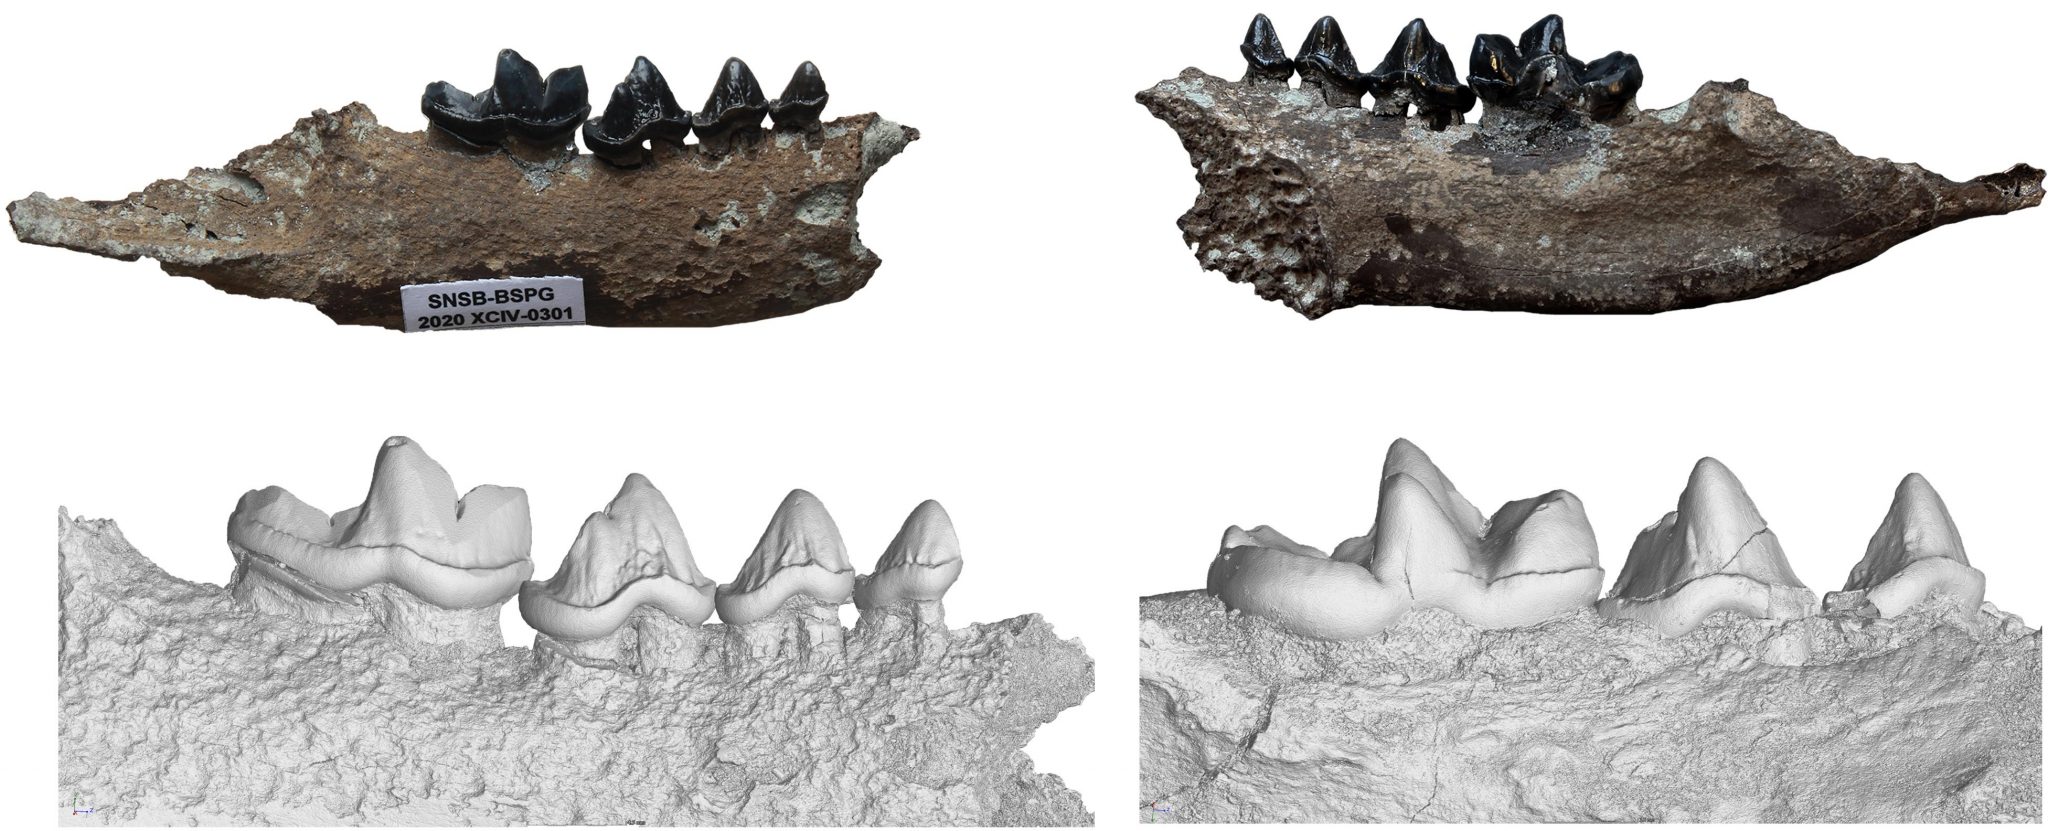 Hammerschmiede化石遗址1140万年前地层中发现水獭新物种——毗湿奴水獭